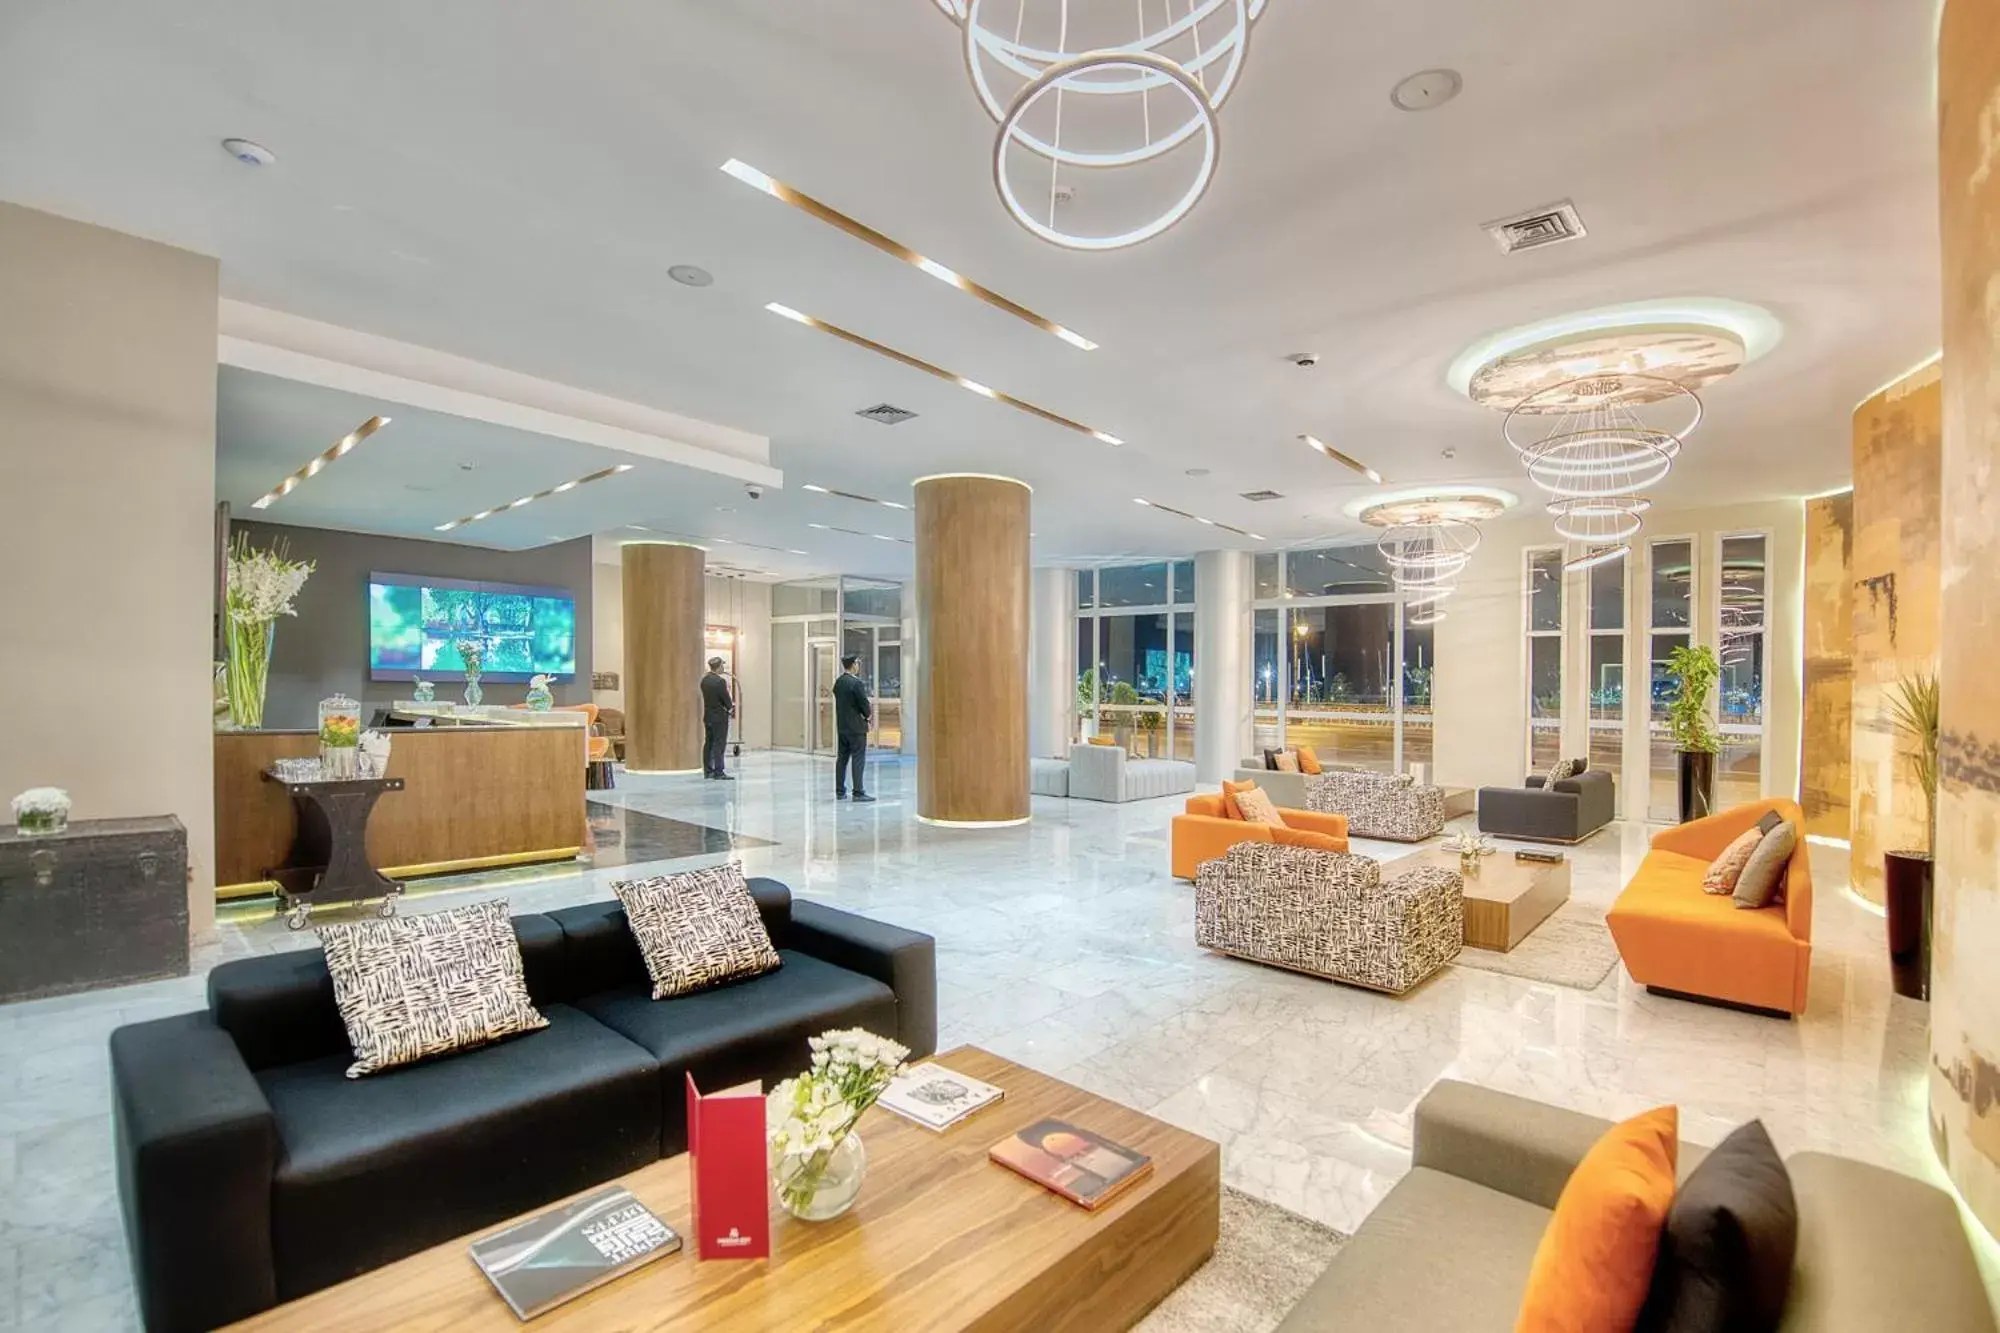 Lobby or reception, Lobby/Reception in Marina Bay